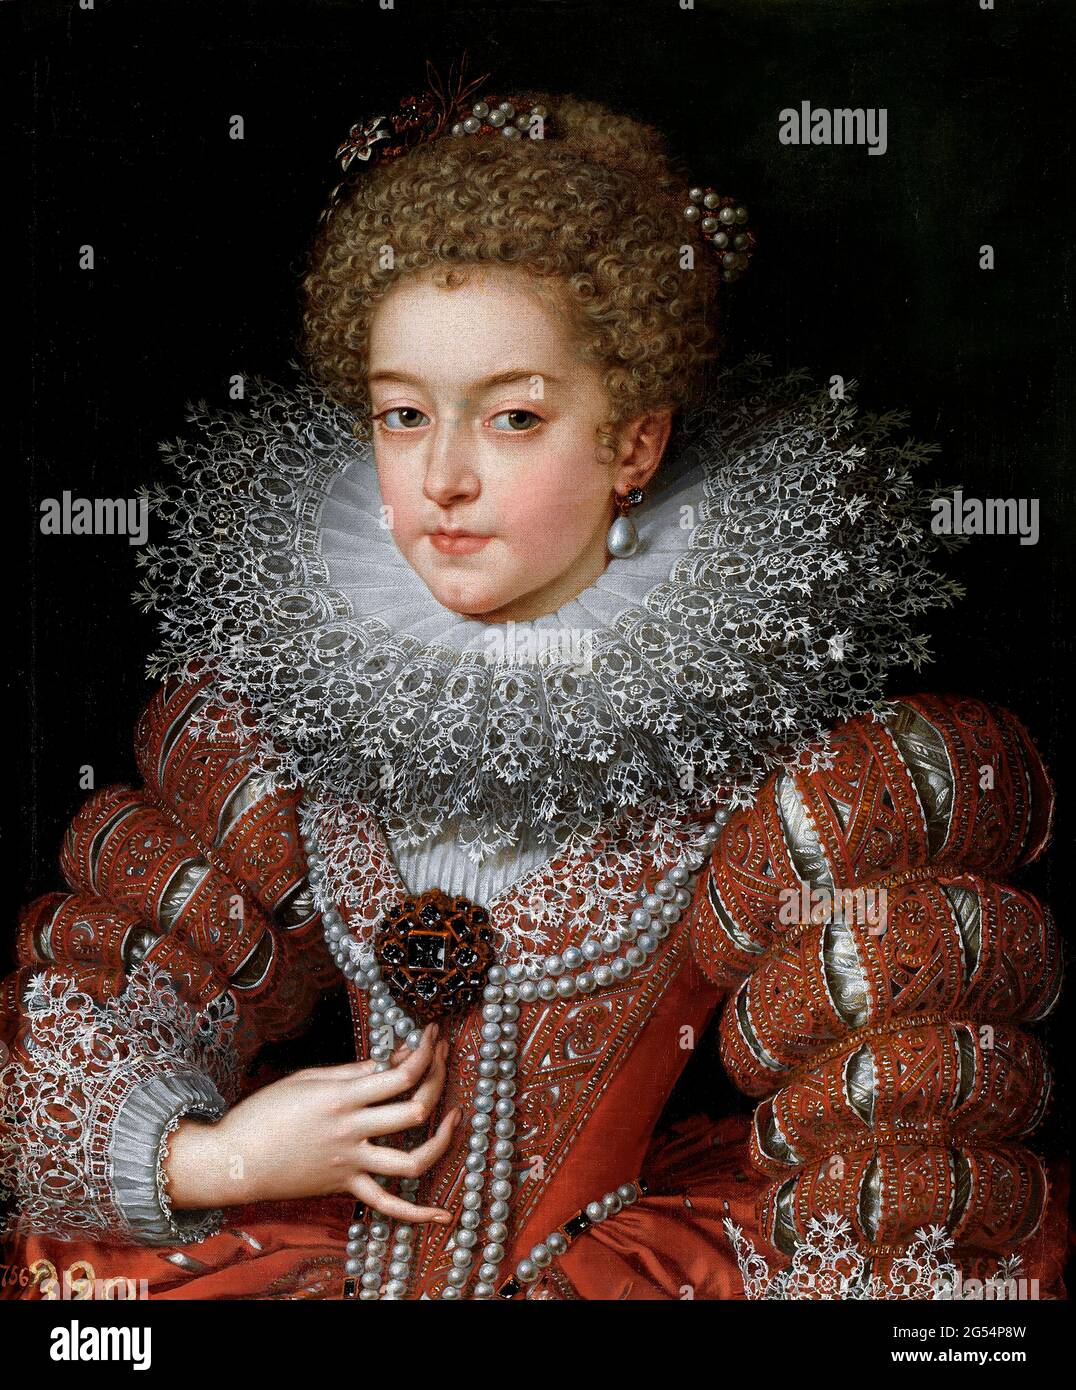 Elisabeth von Frankreich, Königin von Spanien. Porträt von Isabella von Bourbon (1602-1644) von Frans Pourbus El Joven, Öl auf Leinwand, c.. 1615 Stockfoto